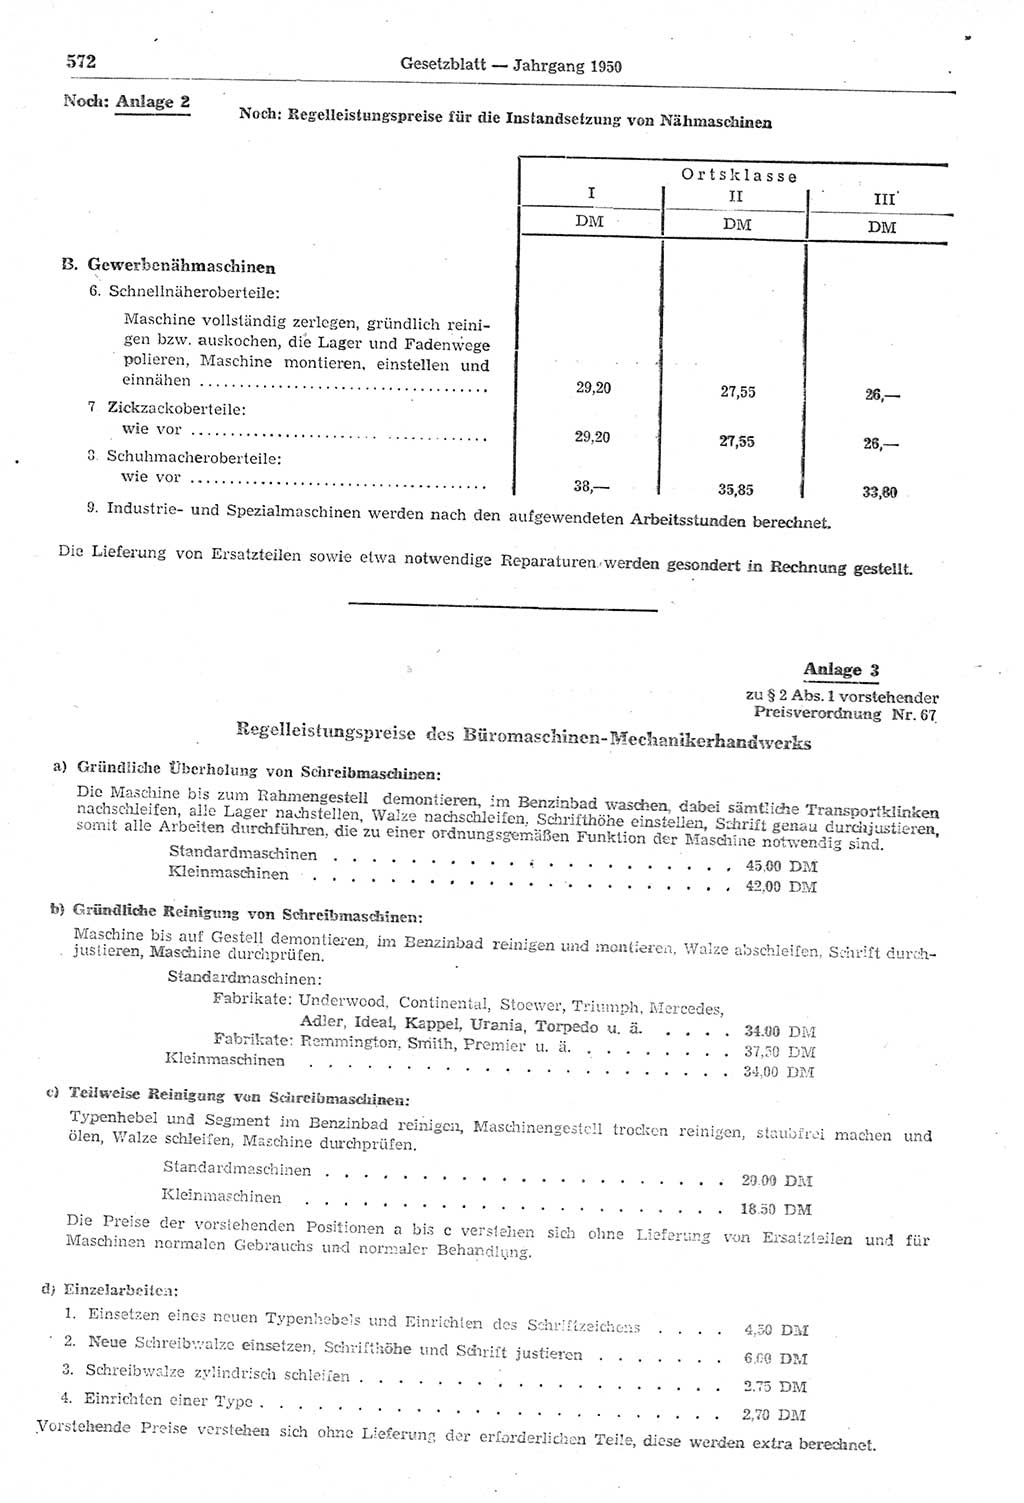 Gesetzblatt (GBl.) der Deutschen Demokratischen Republik (DDR) 1950, Seite 572 (GBl. DDR 1950, S. 572)